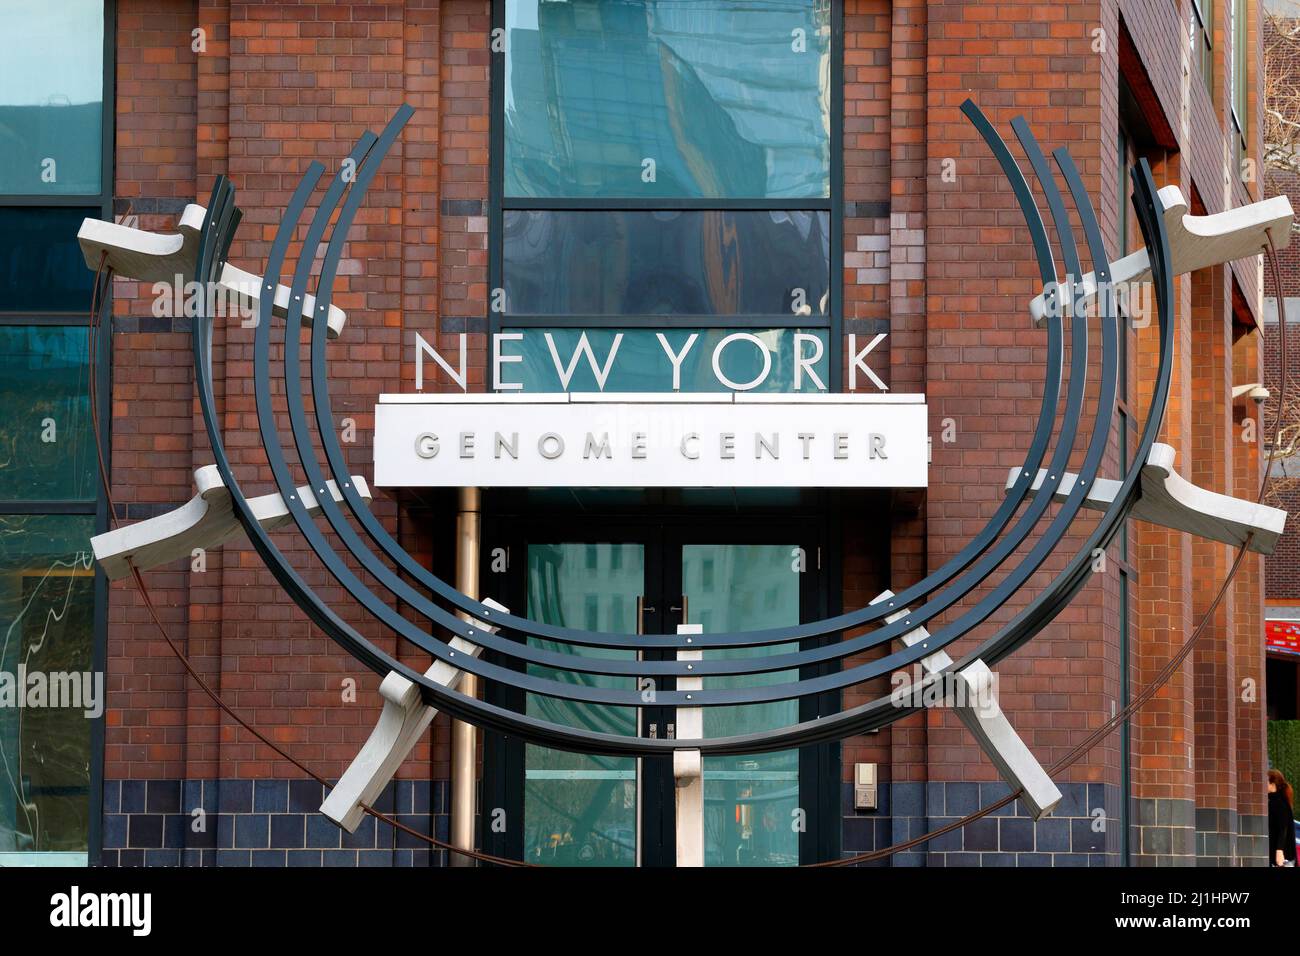 New York Genome Center, 101 6th Ave, New York, NYC foto di un istituto accademico di ricerca biomedica a Manhattan. Foto Stock